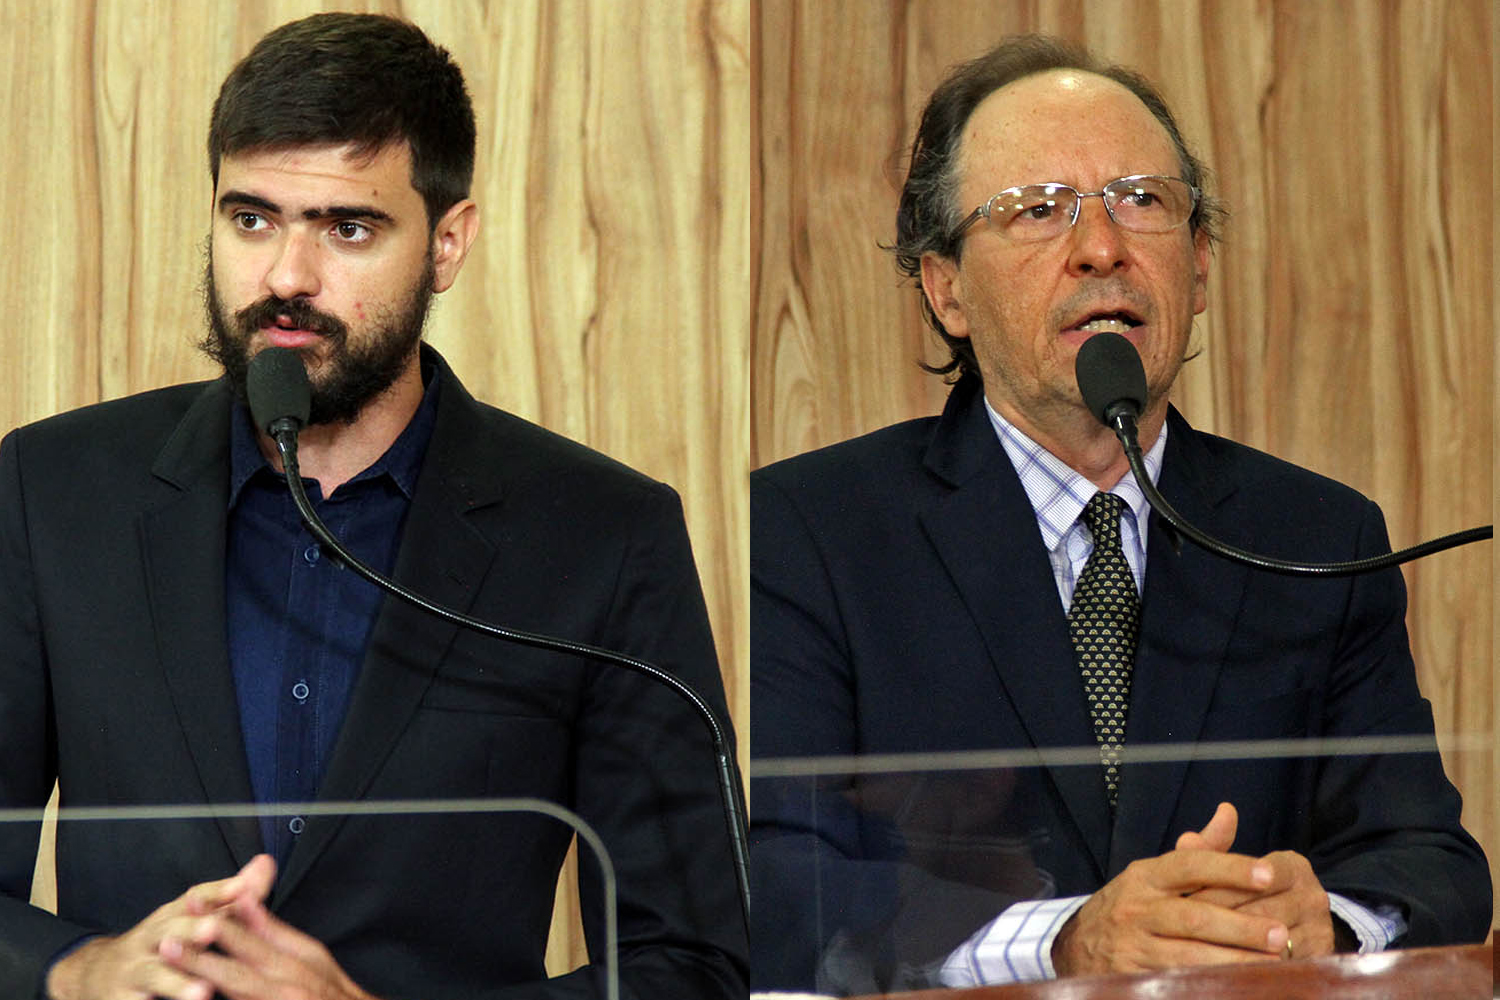 #PraCegoVer: Foto-montagem mostra o vereador Gabriel Bueno no lado esquerdo e o vereador Henrique Conti no lado direito.